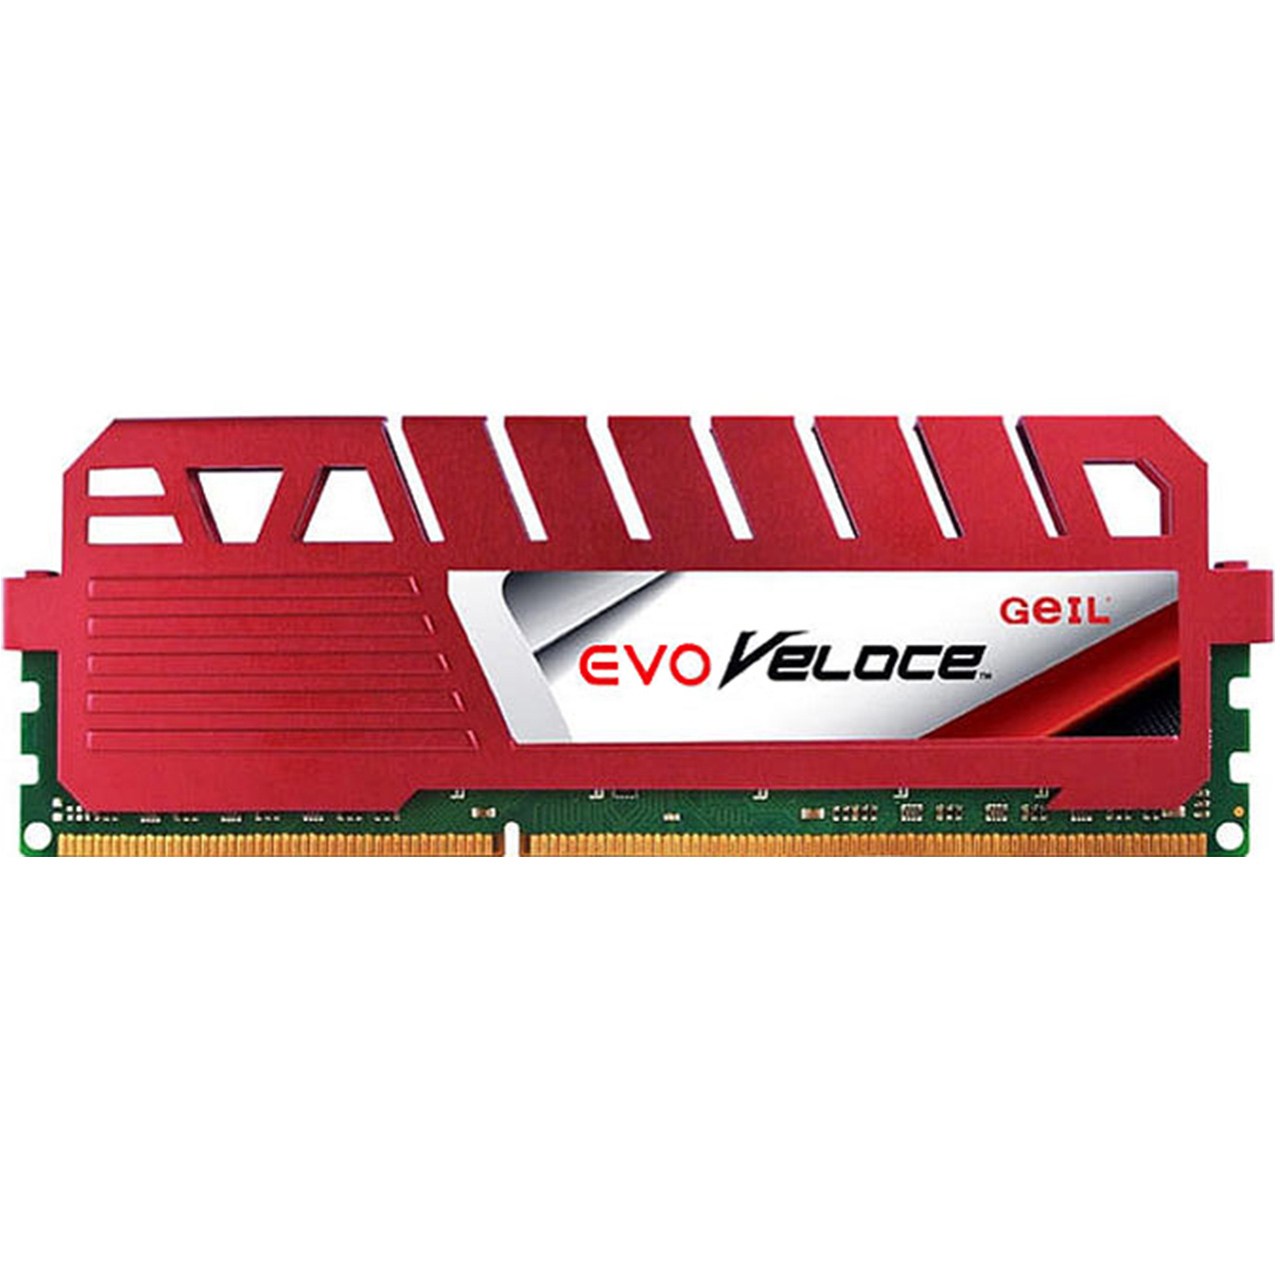 رم دسکتاپ DDR3 تک کاناله 1600 مگاهرتز CL11 گیل مدل Evo Veloce ظرفیت 4 گیگابایت